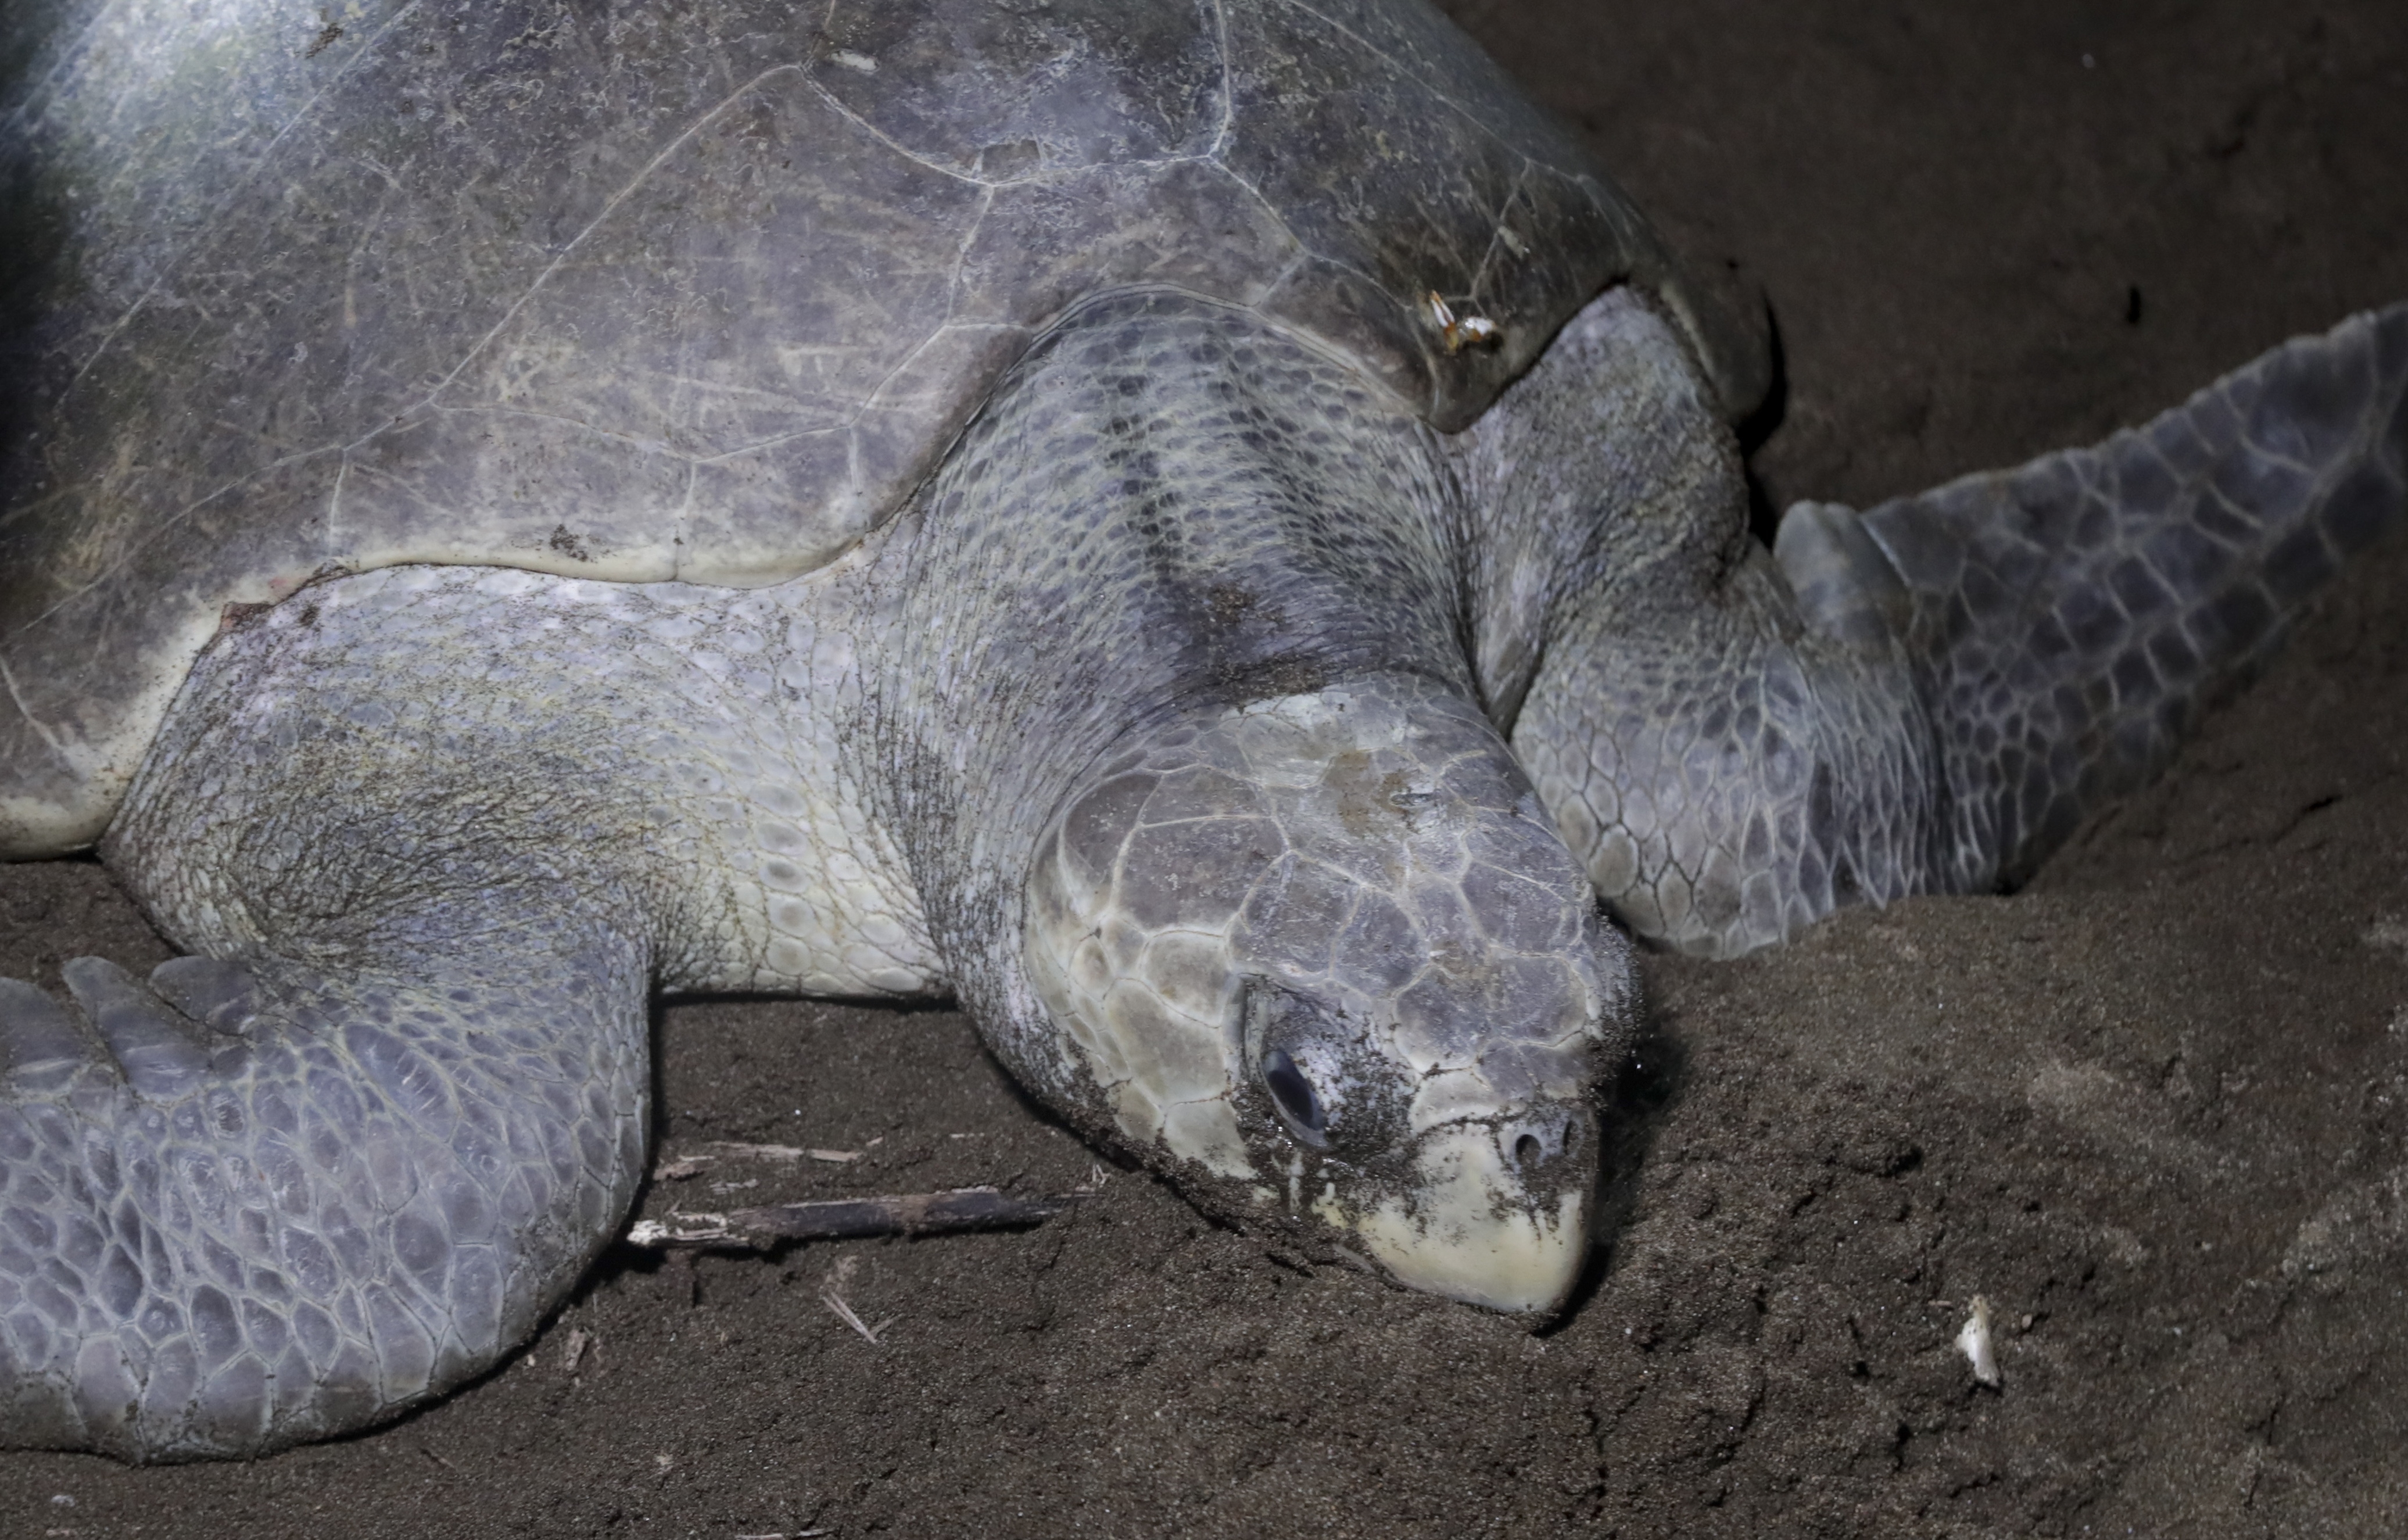 Volunteers conserve endangered sea turtles in remote Panama